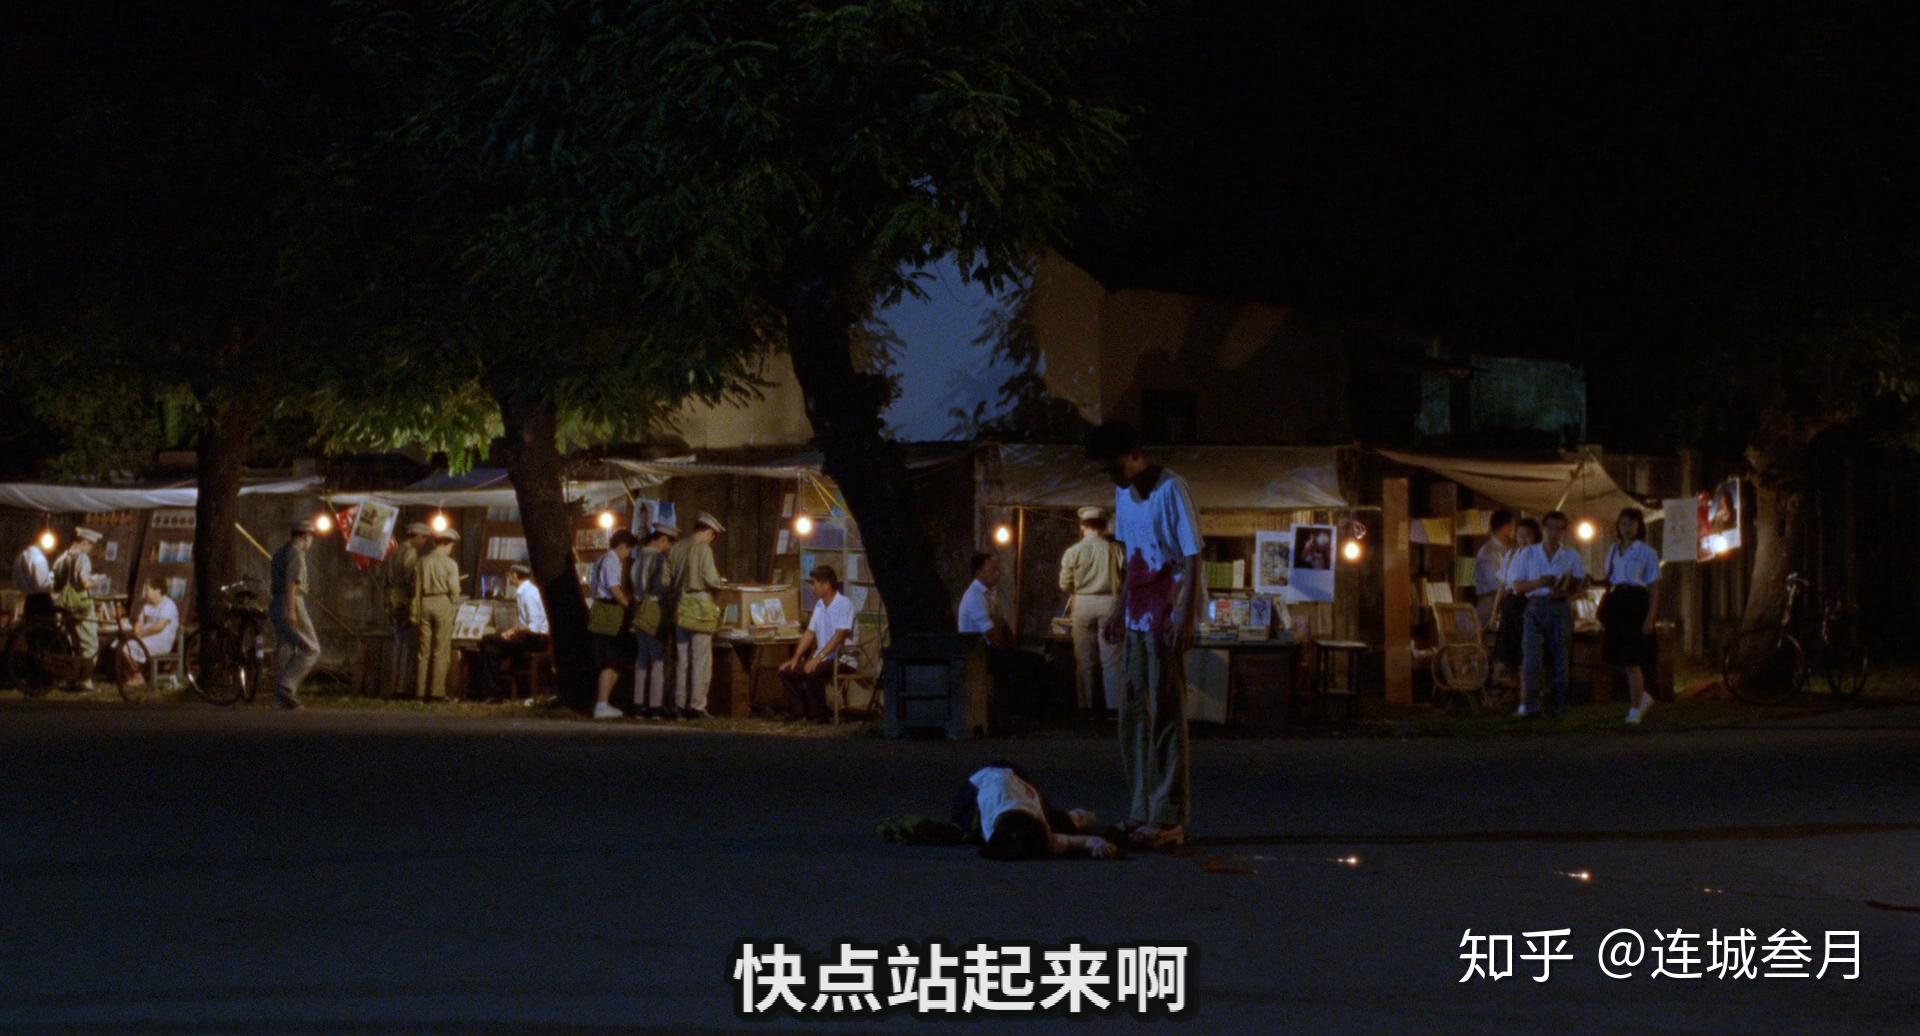 关于《牯岭街少年杀人事件》的全面解读：一部不该被忽略的经典华语电影 - 知乎